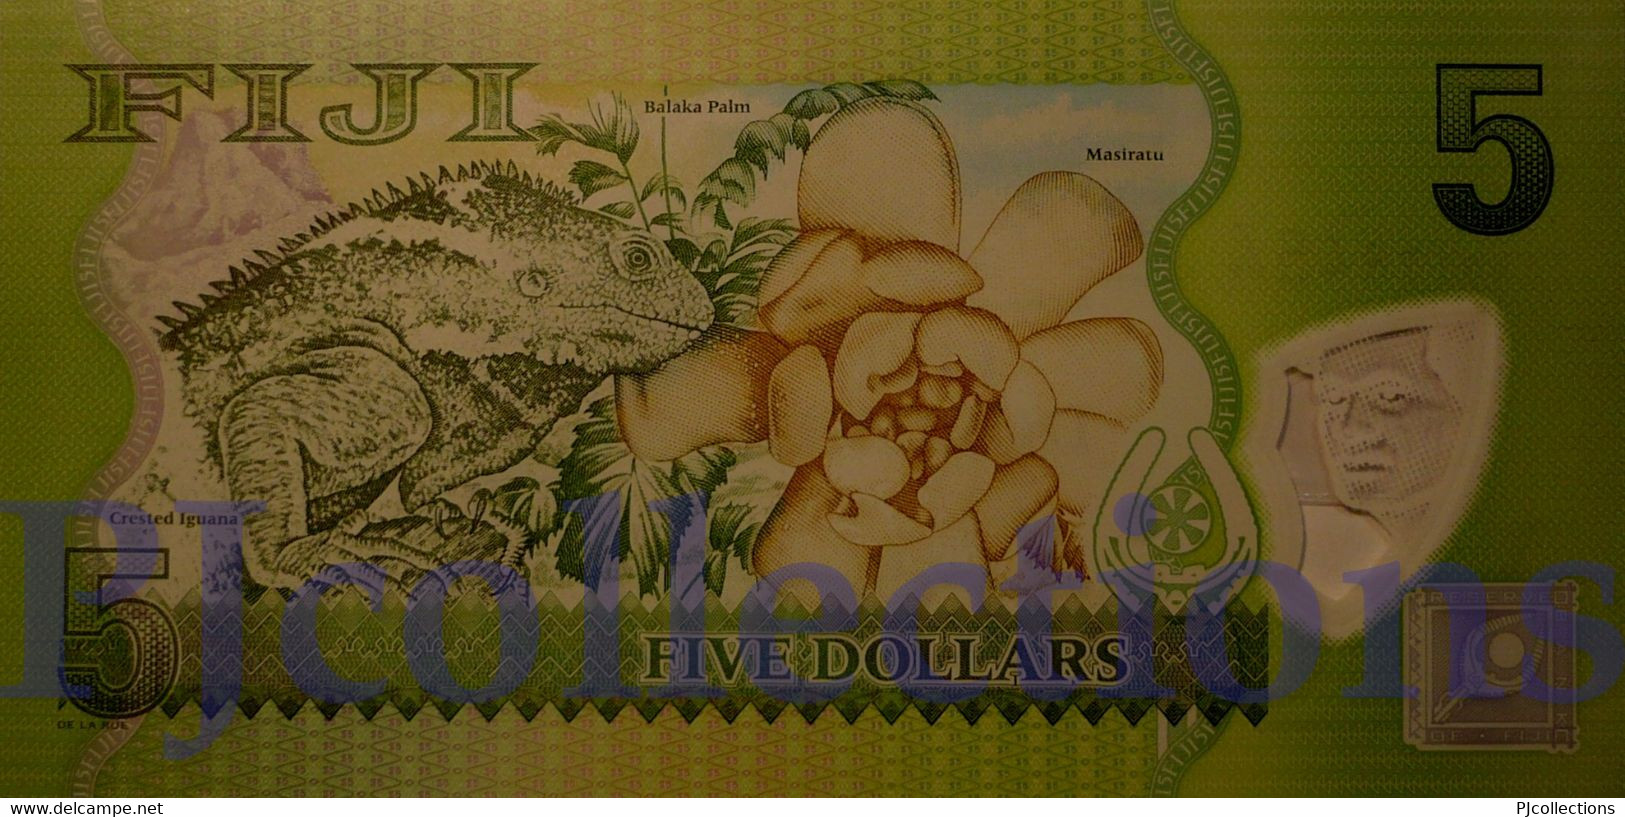 FIJI 5 DOLLARS 2013 PICK 115r POLYMER UNC REPLACEMENT - Fidji